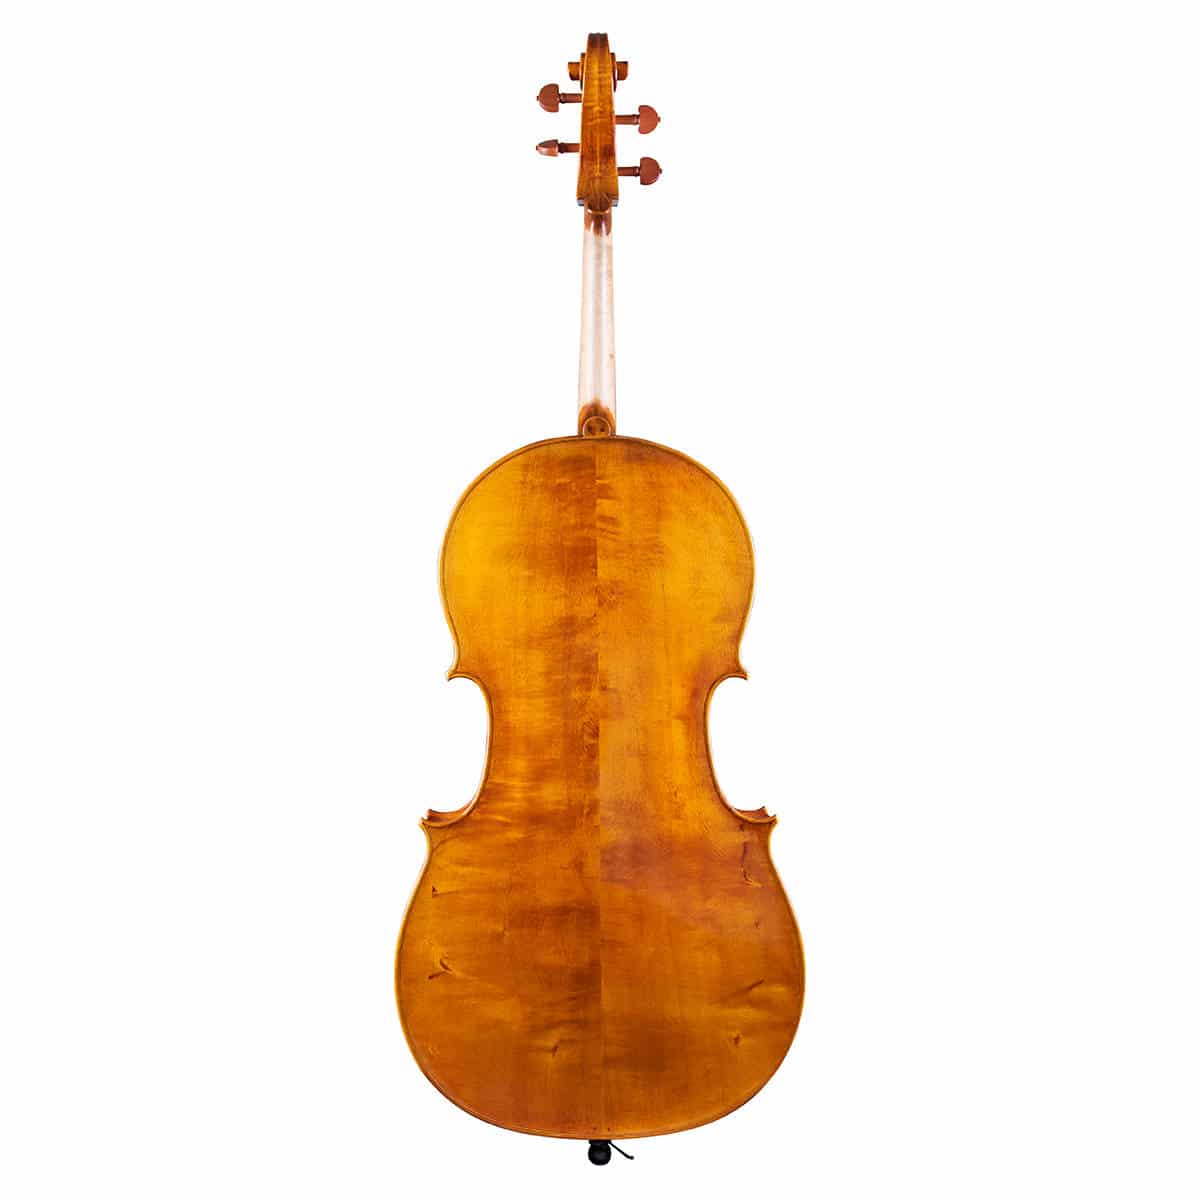 Le violoncelle comme passion